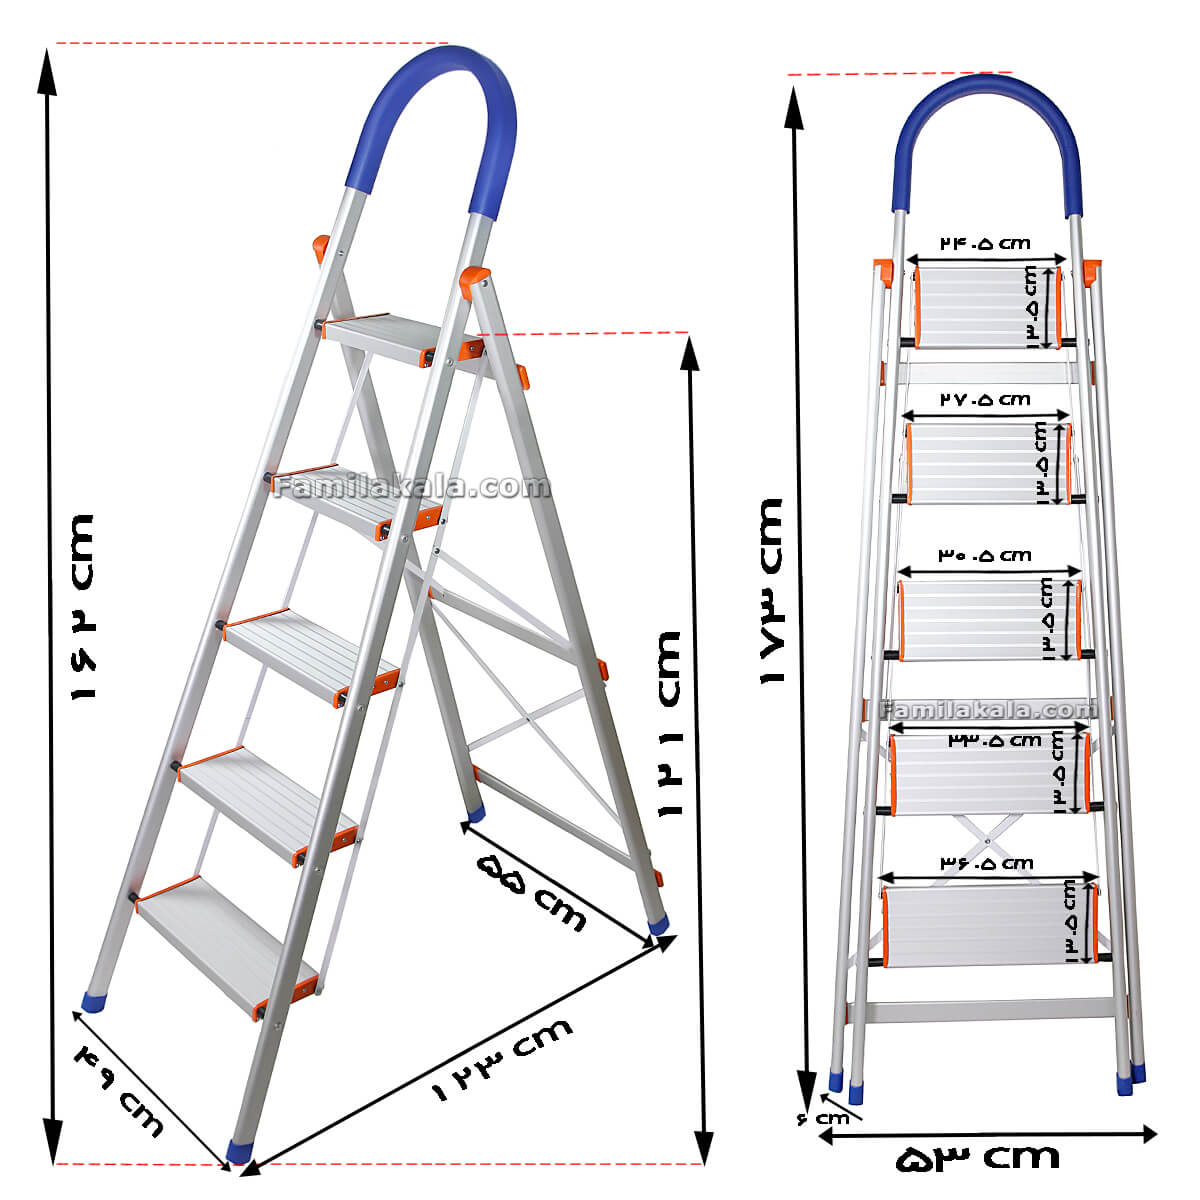 نردبان پارتیان 5 پله نقره ای مدل 102 فامیلاکالا